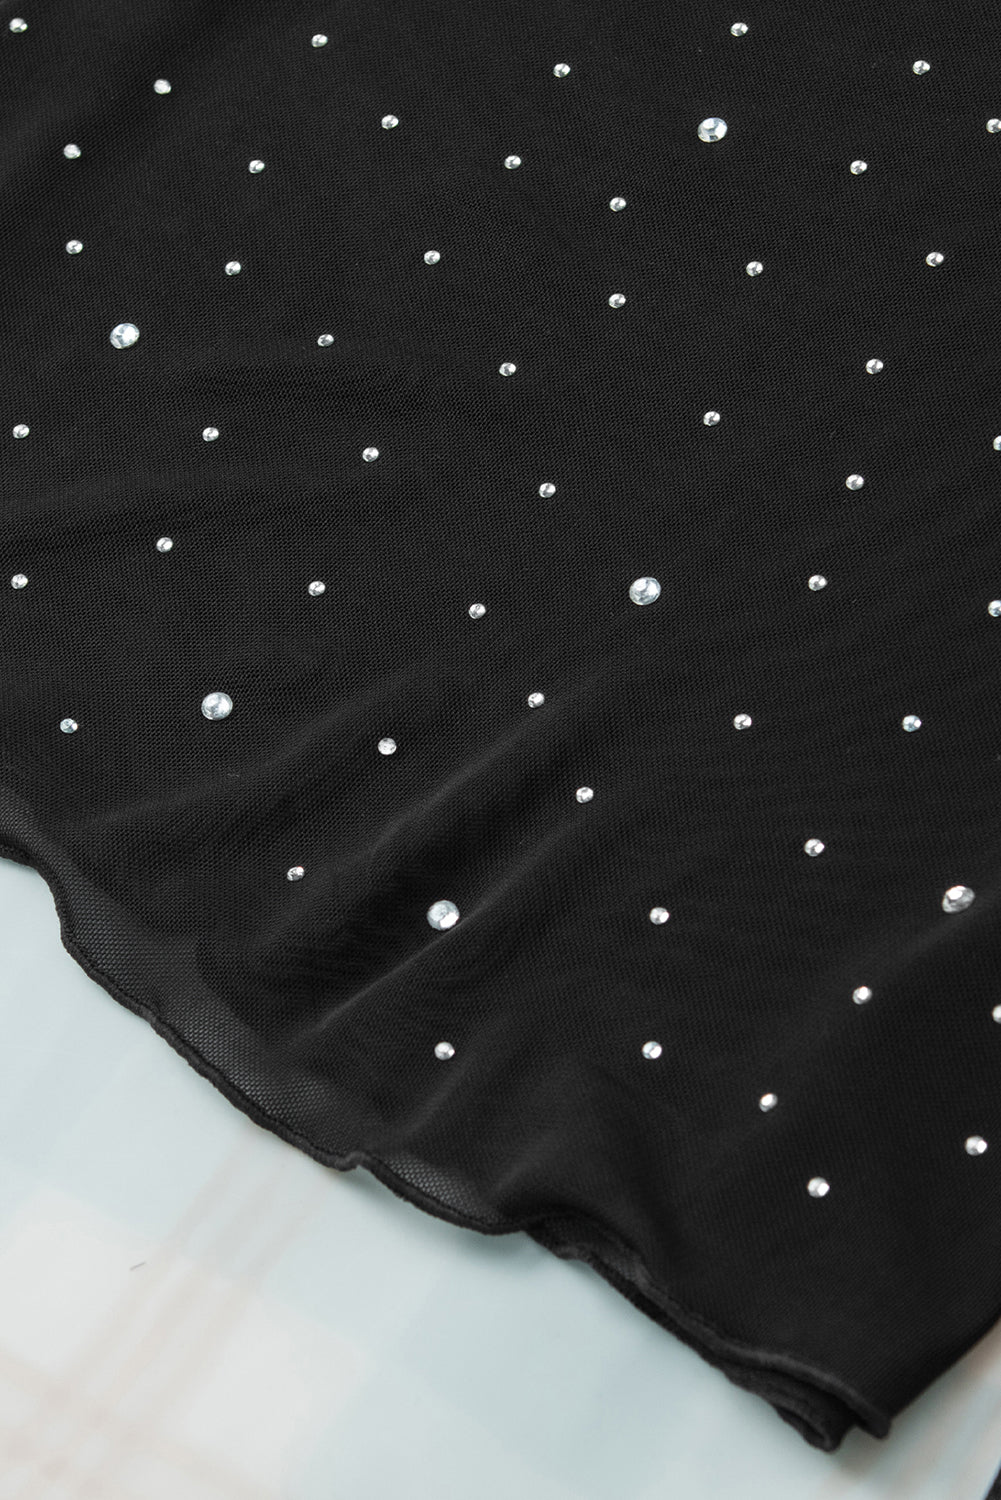 Crna majica s dugim rukavima od prozirne mrežaste tkanine uskog kroja